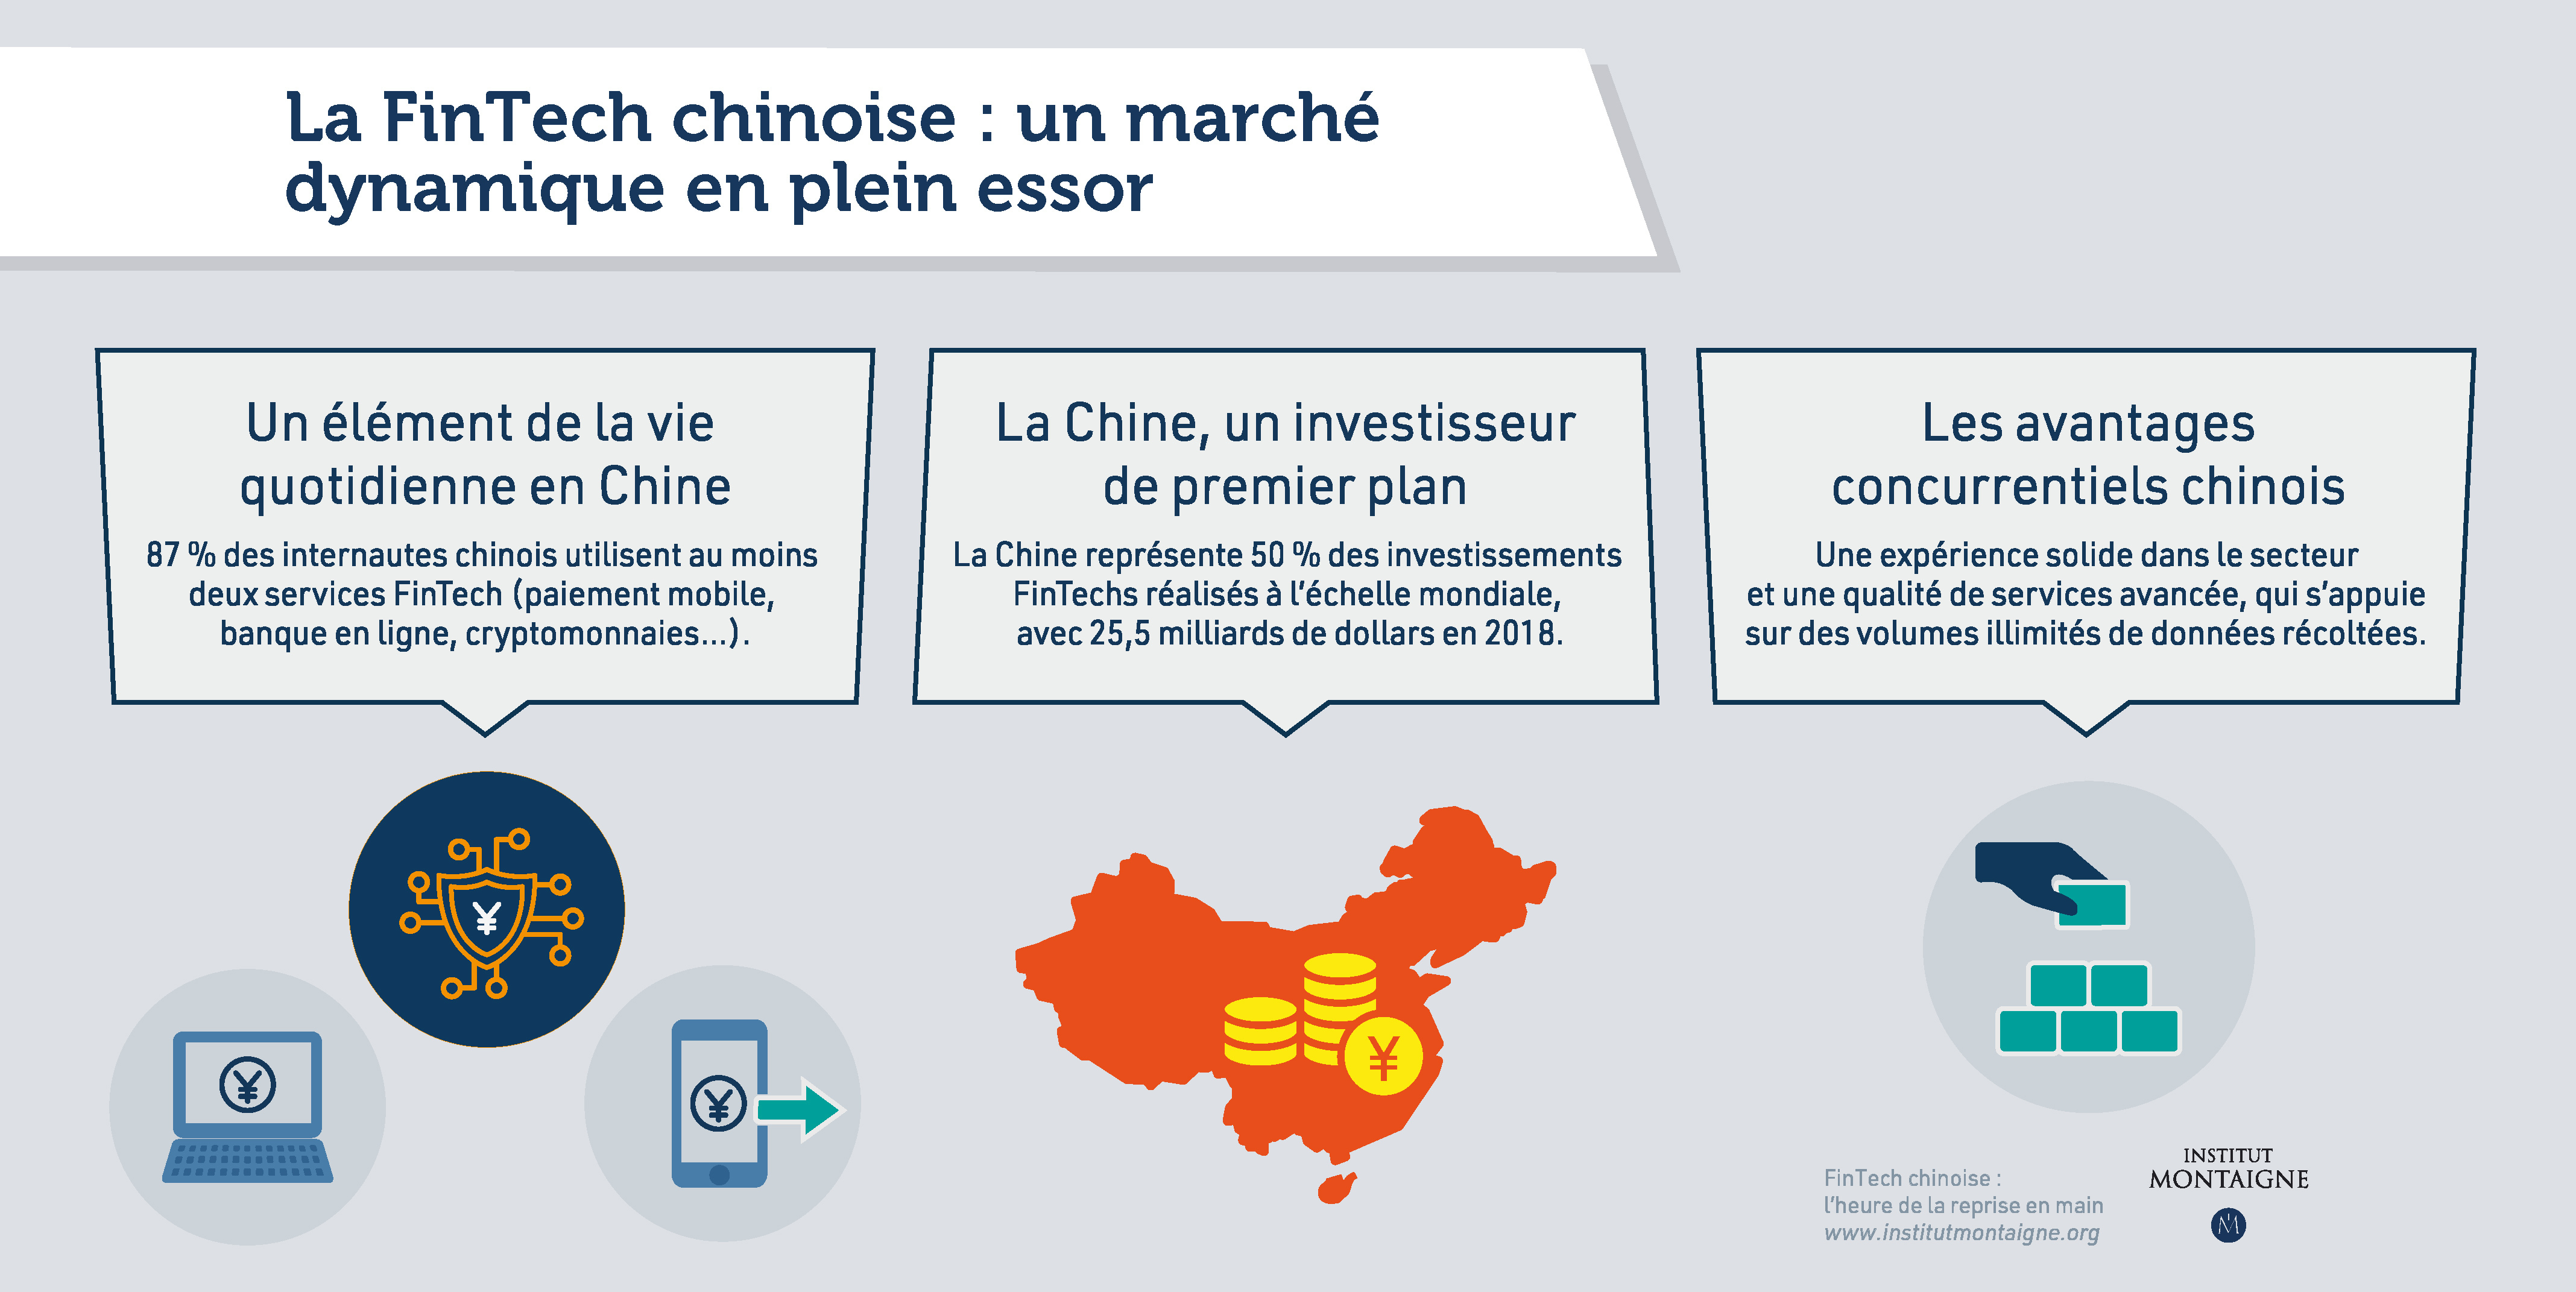 La FinTech chinoise : un marché dynamique en plein essor